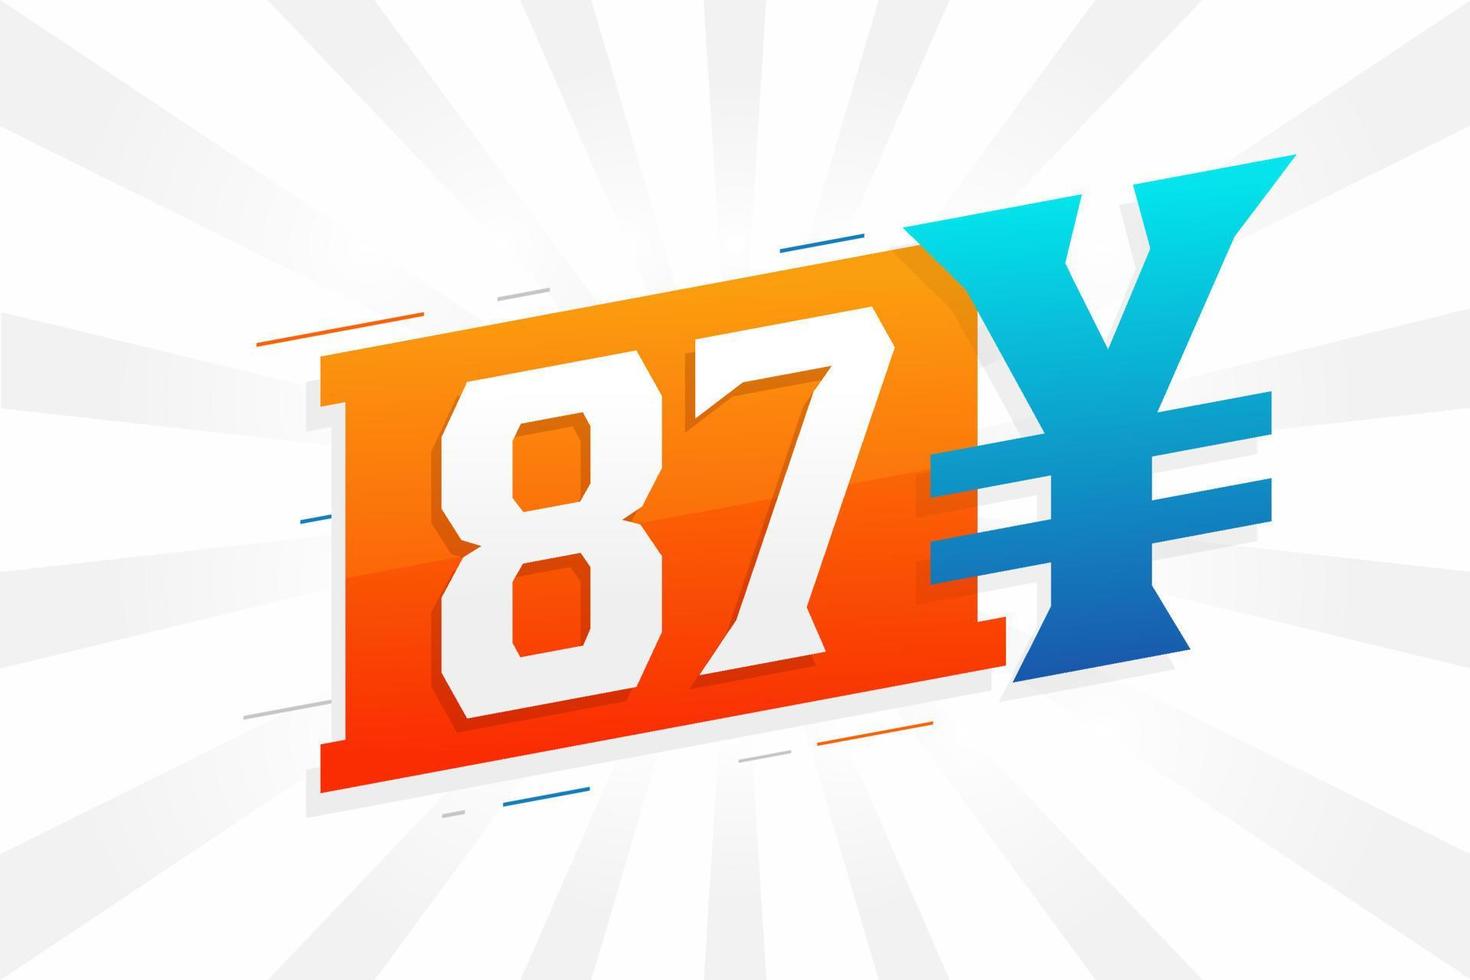 87 Yuan chinesisches Währungsvektor-Textsymbol. 87 Yen japanische Währung Geld Aktienvektor vektor